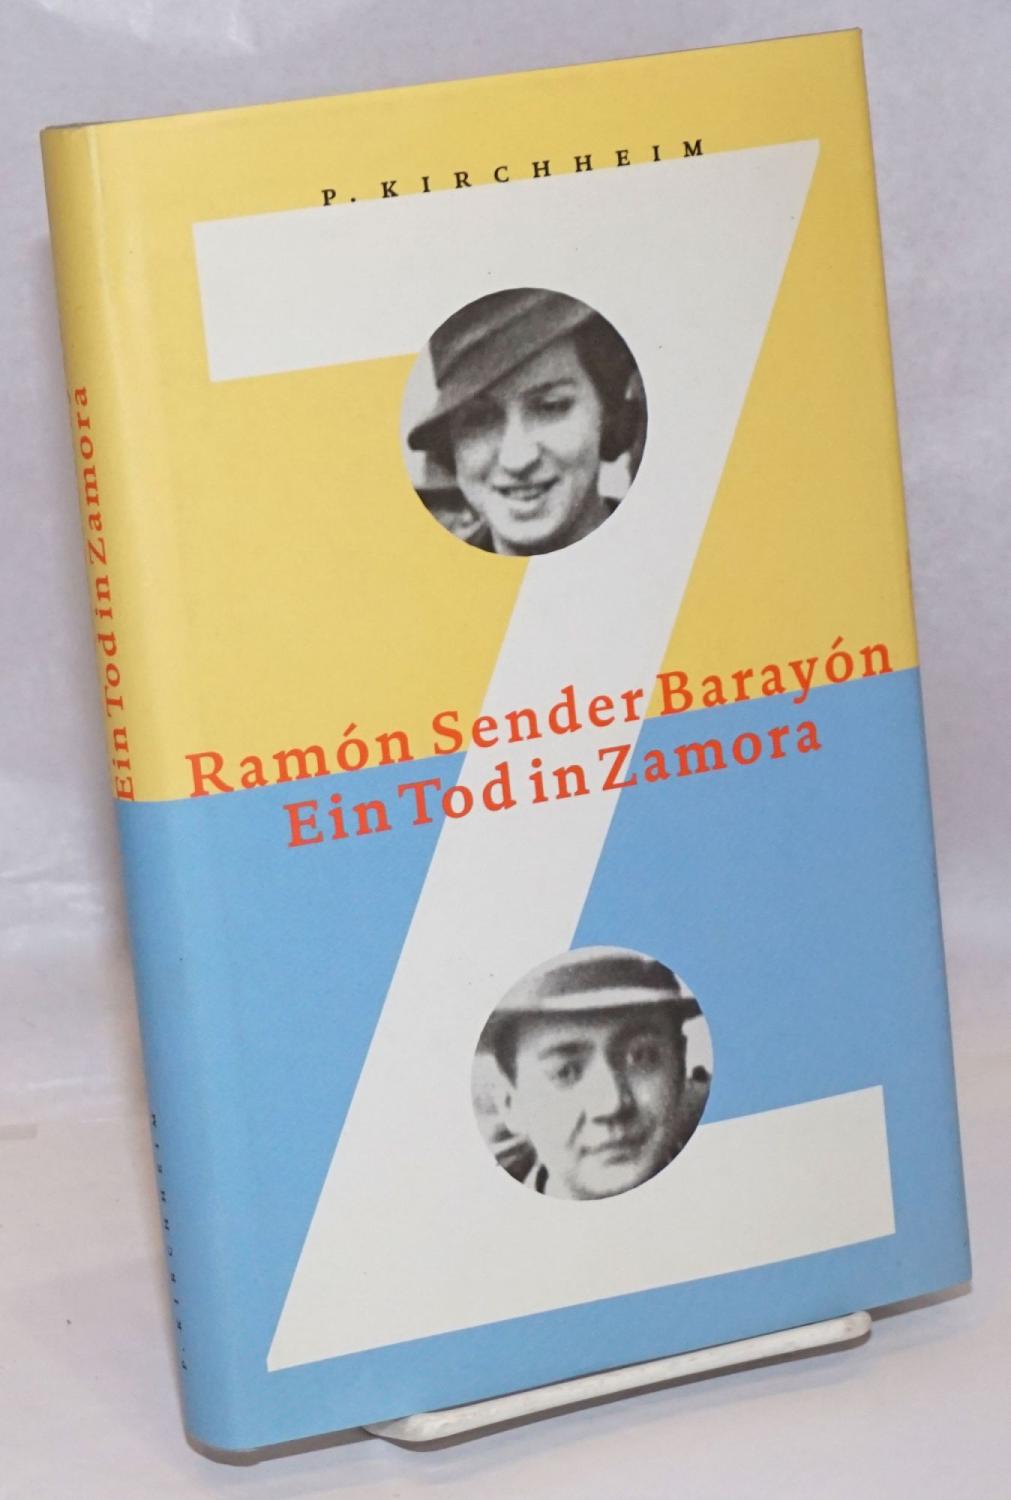 Ein Tod in Zamora - Sender Barayón, Ramón, translated by Peter Kultzen